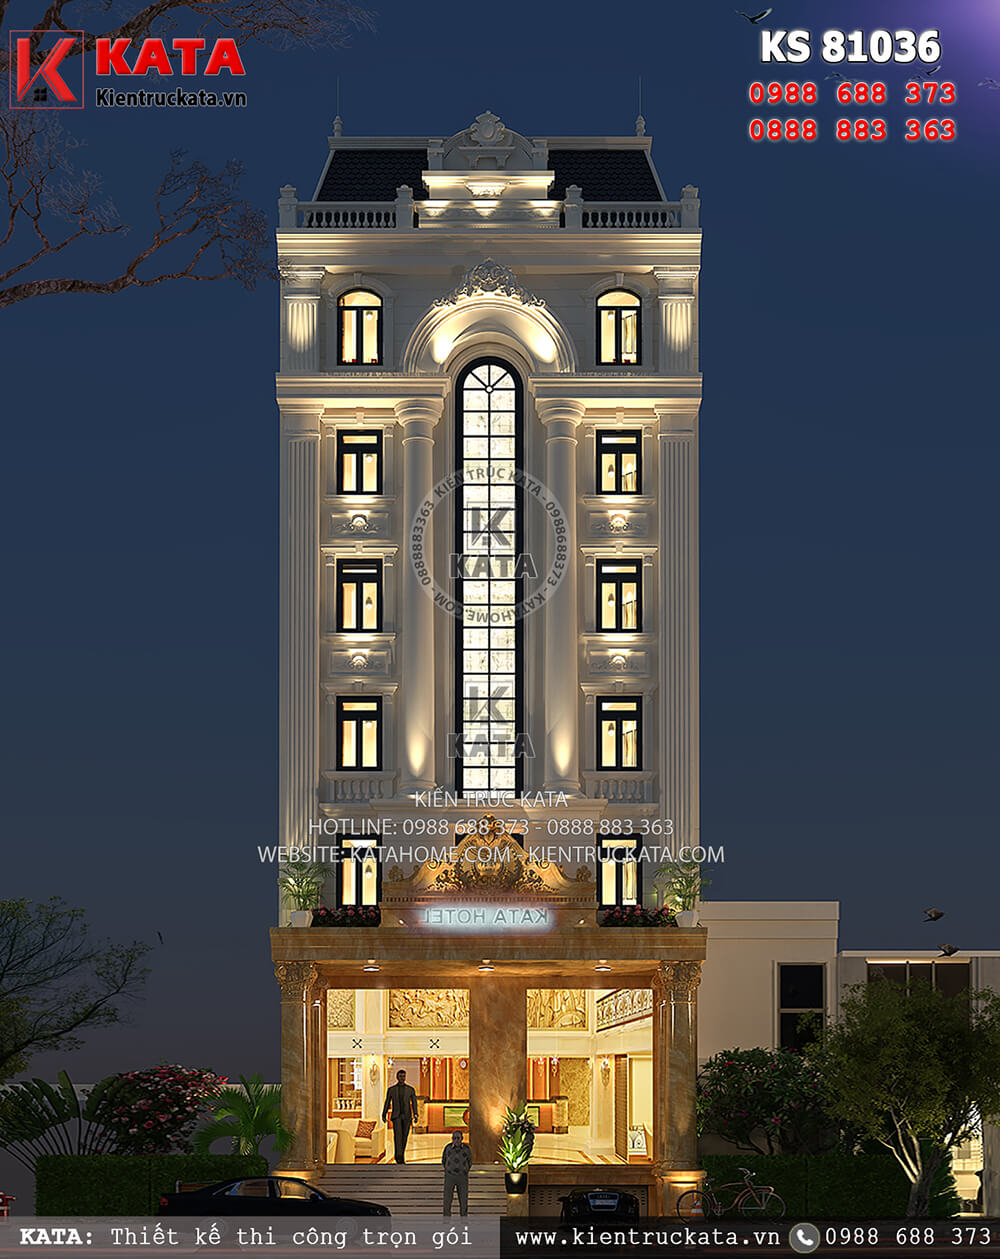 Thiết kế khách sạn 3 sao mặt tiền 12m tại Thanh Hóa sang trọng và đầy cuốn hút